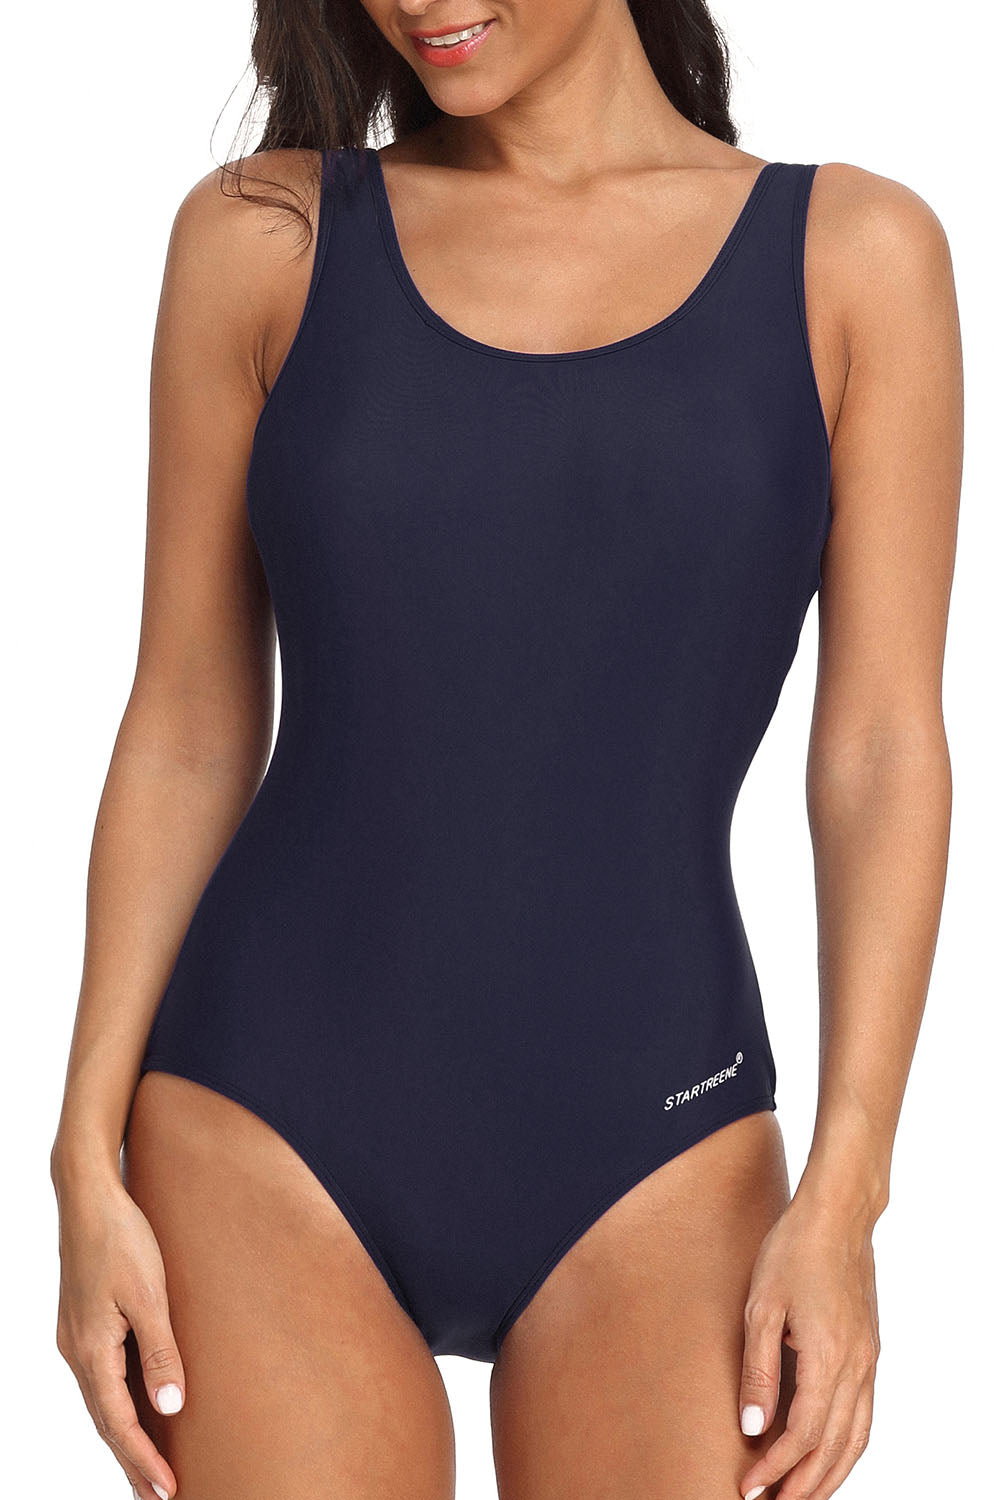 StarTreene Women Athletic One Piece Swimsuits Racerback Swimwear Bathing Suit